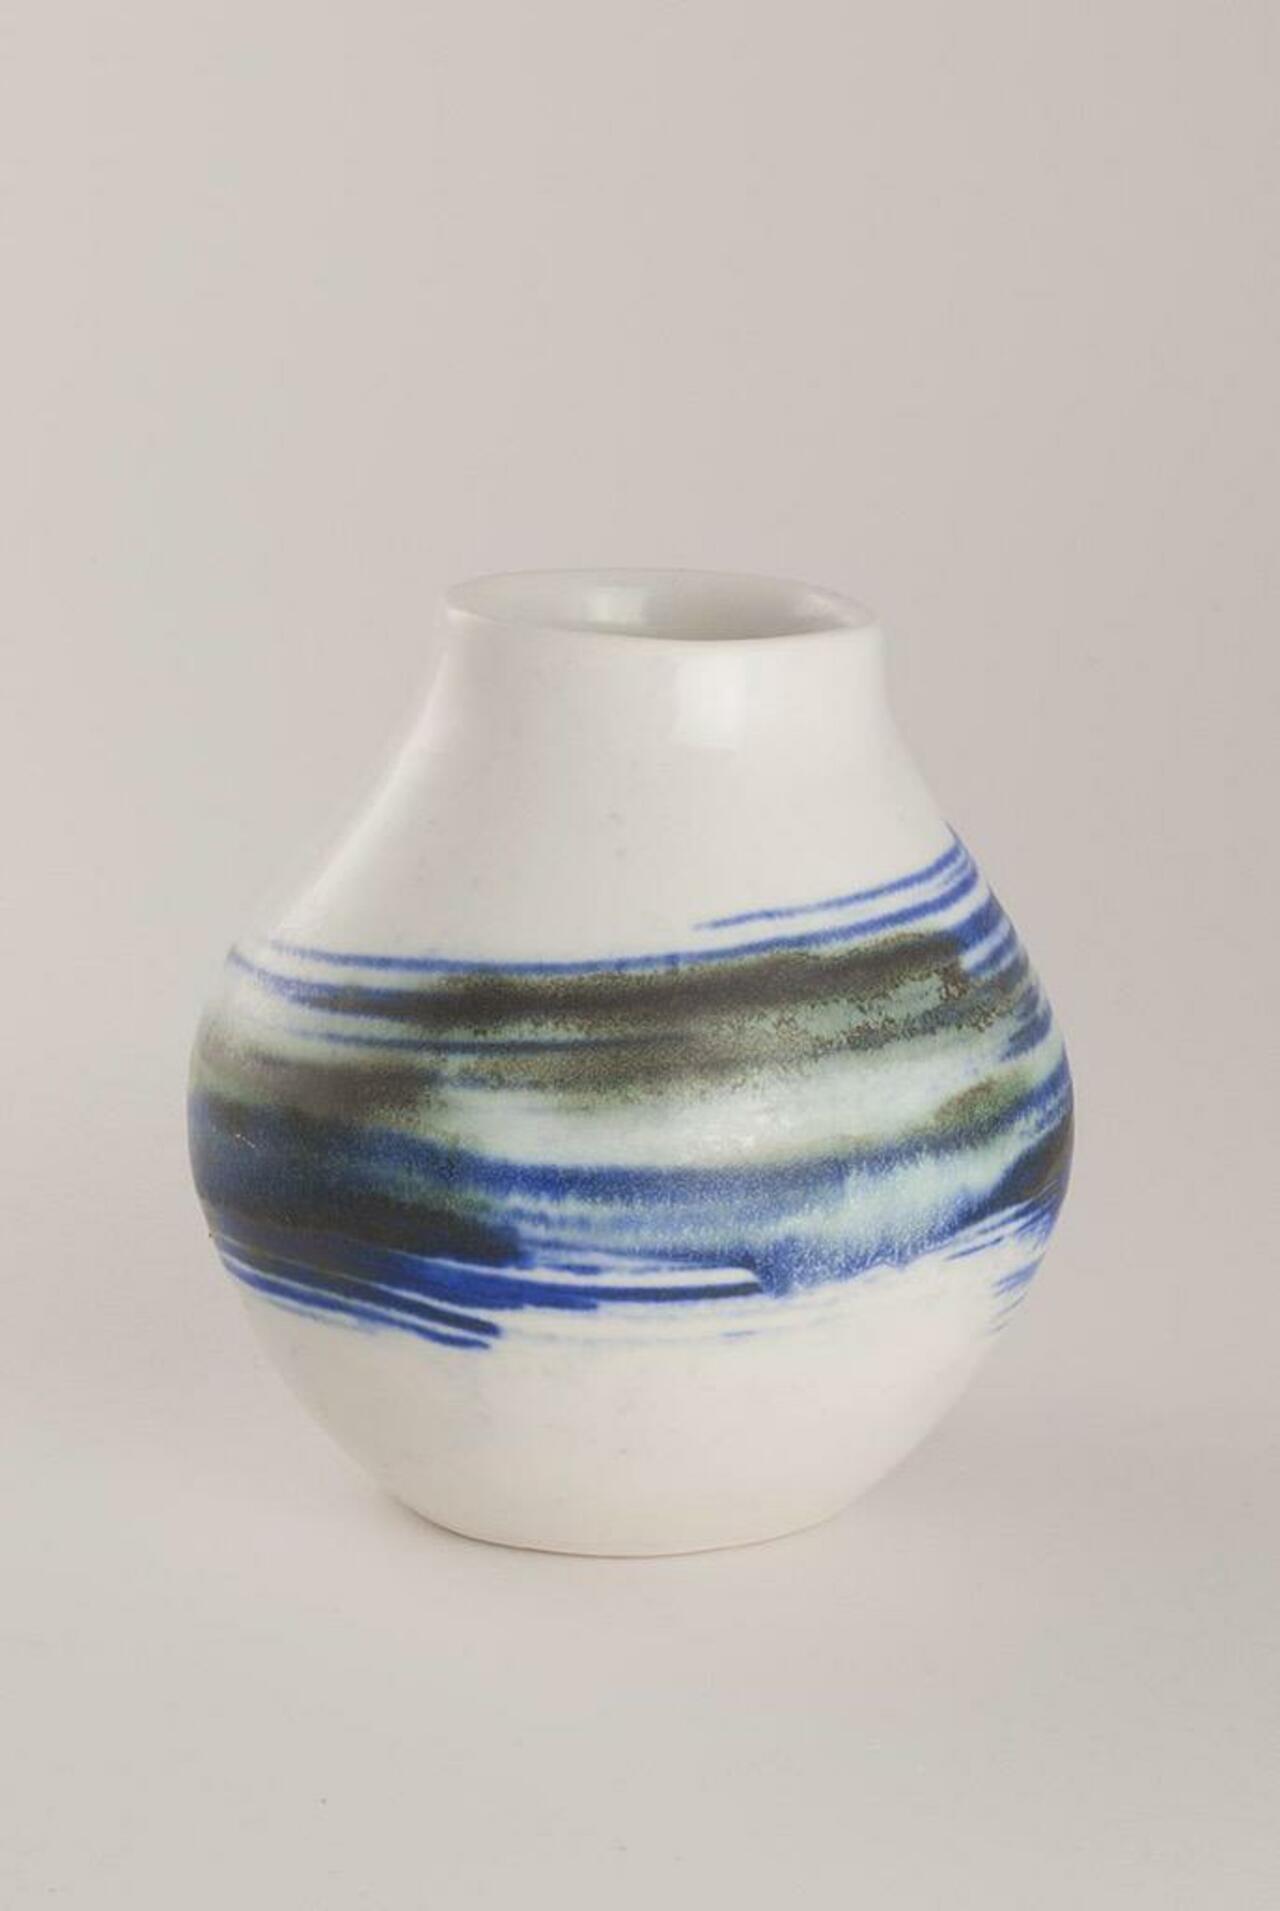 New vases #ceramics http://t.co/ghhlVOBuC7